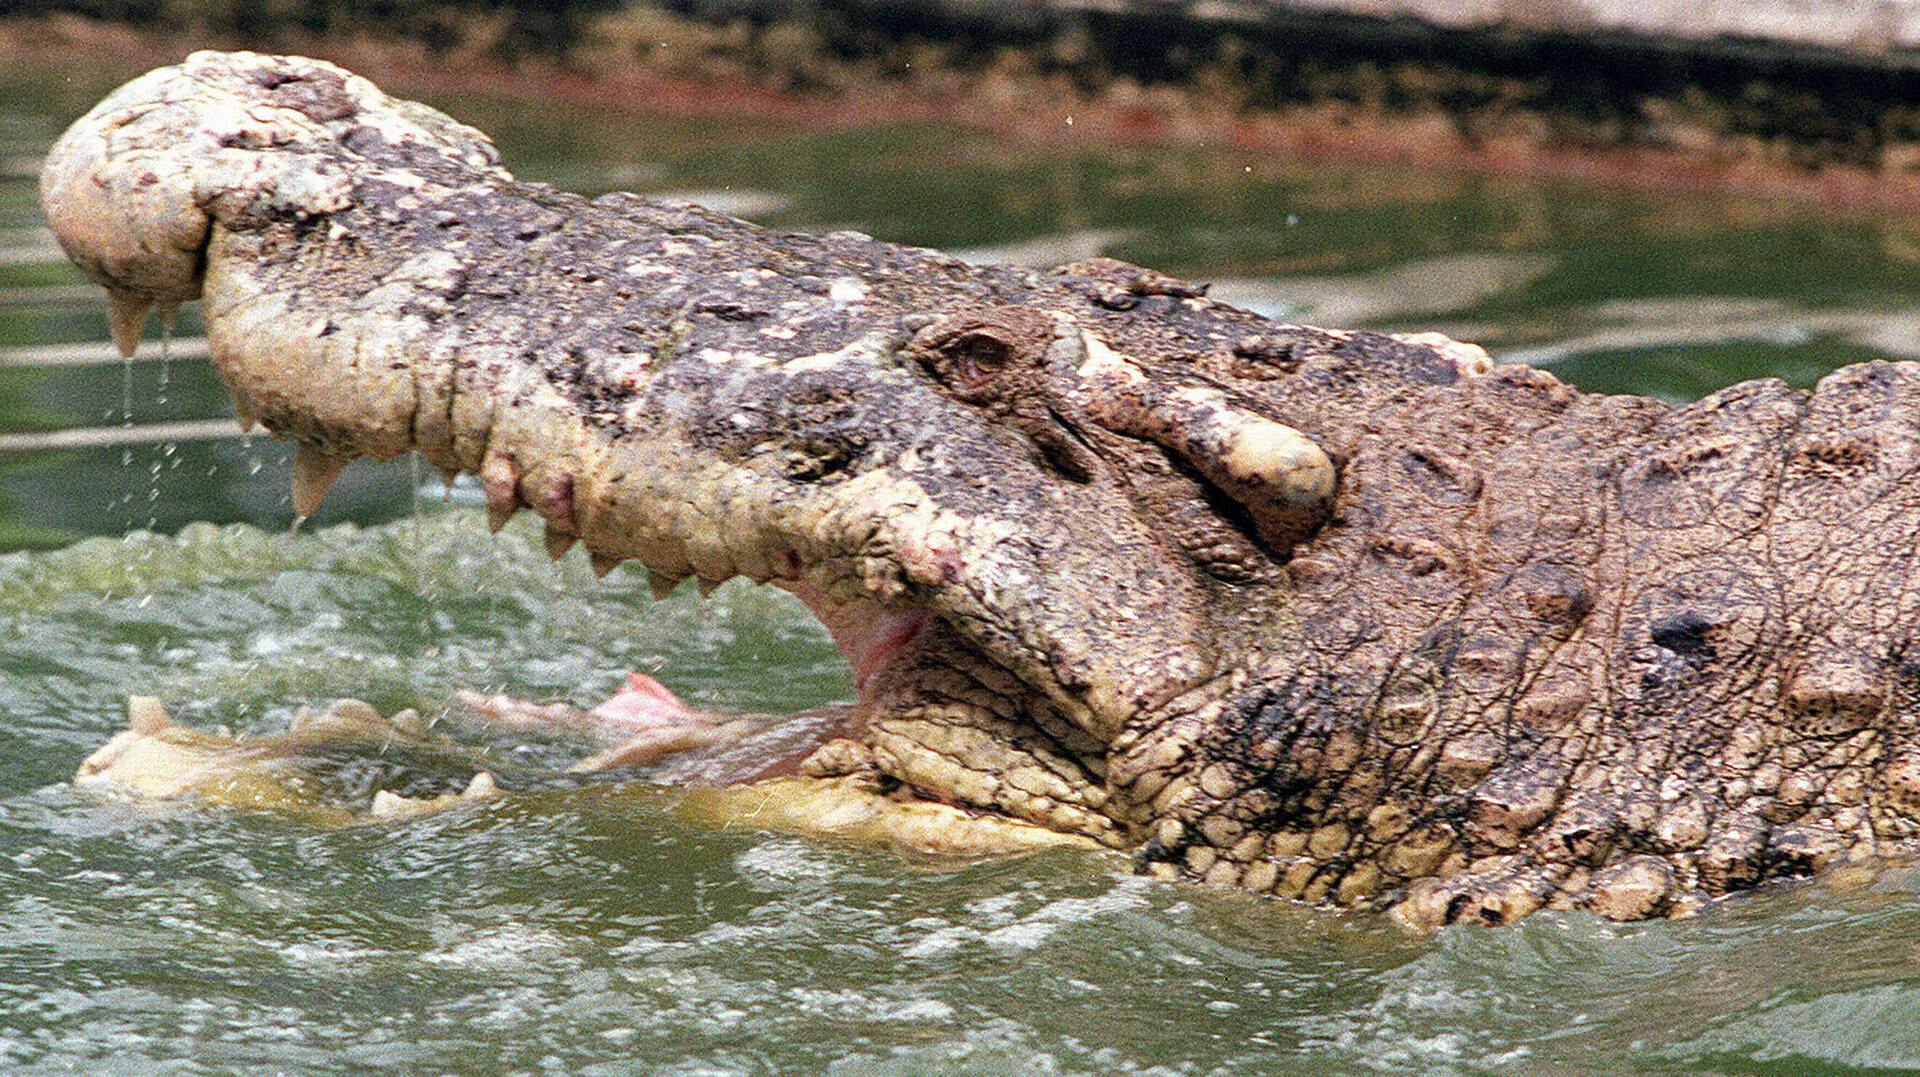 En australsk mand overlevede for nyligt et krokodille-angreb, selvom han befandt sig i gabet på det vilde dyr. OBS: Arkivfoto.